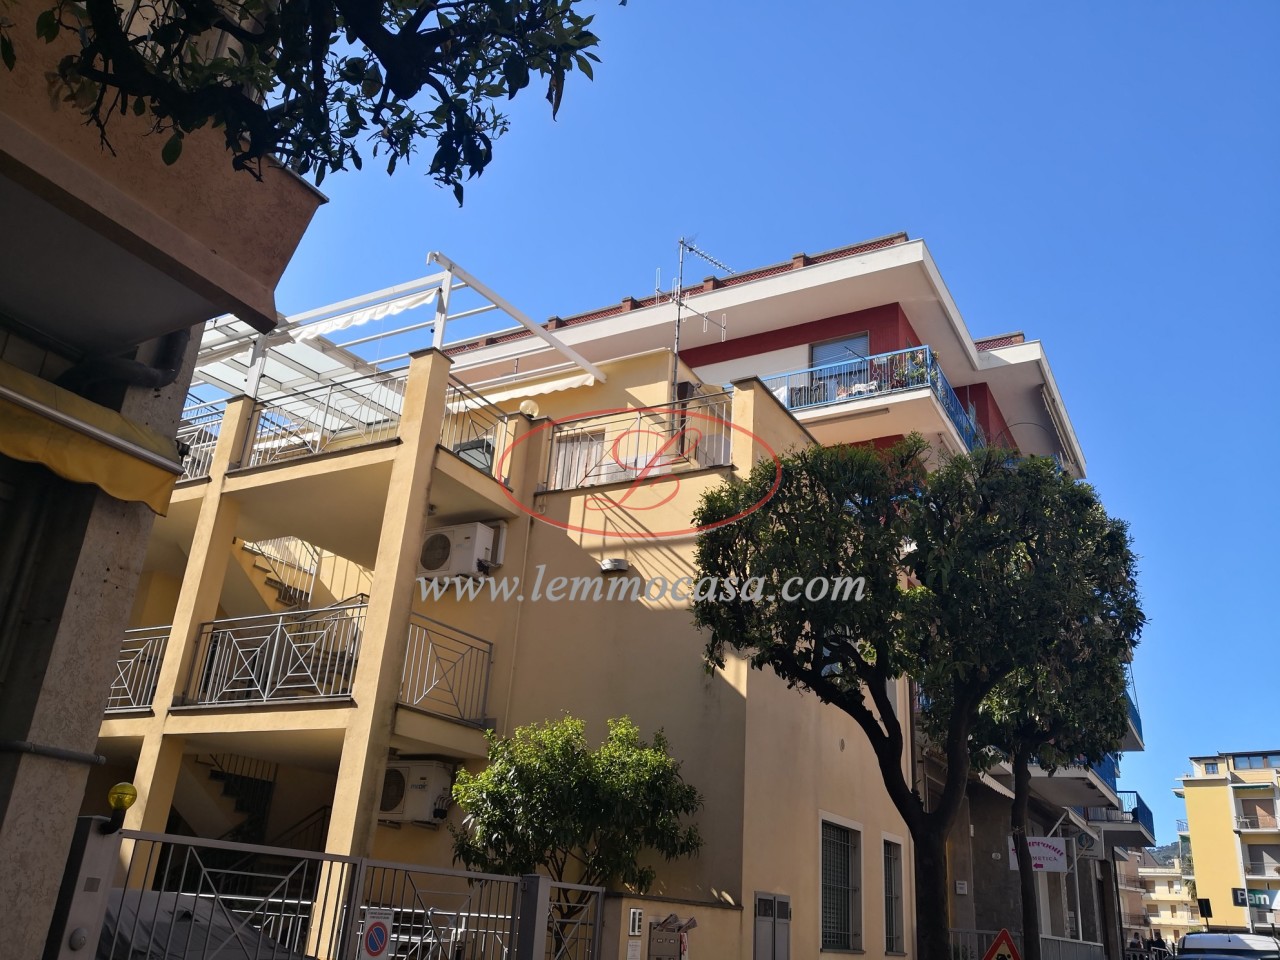 Appartamento in vendita a Diano Marina, 2 locali, prezzo € 260.000 | PortaleAgenzieImmobiliari.it